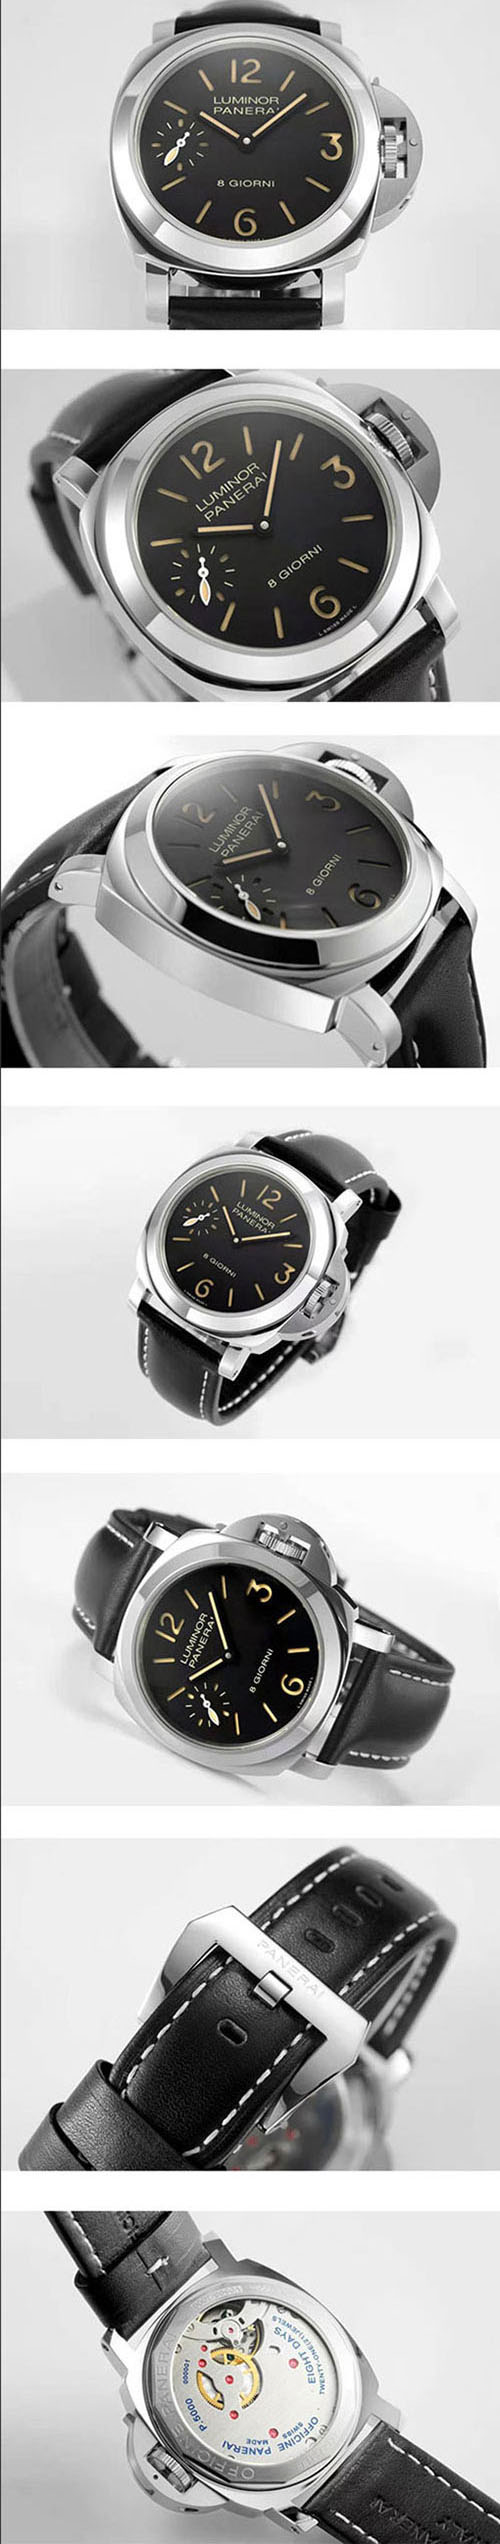 【品質良好】 PANERAI コピー時計 ルミノールマリーナ 8デイズ PAM00915 Asian6497ムーブ スモールセコンド  スーパールミナンス(夜光)